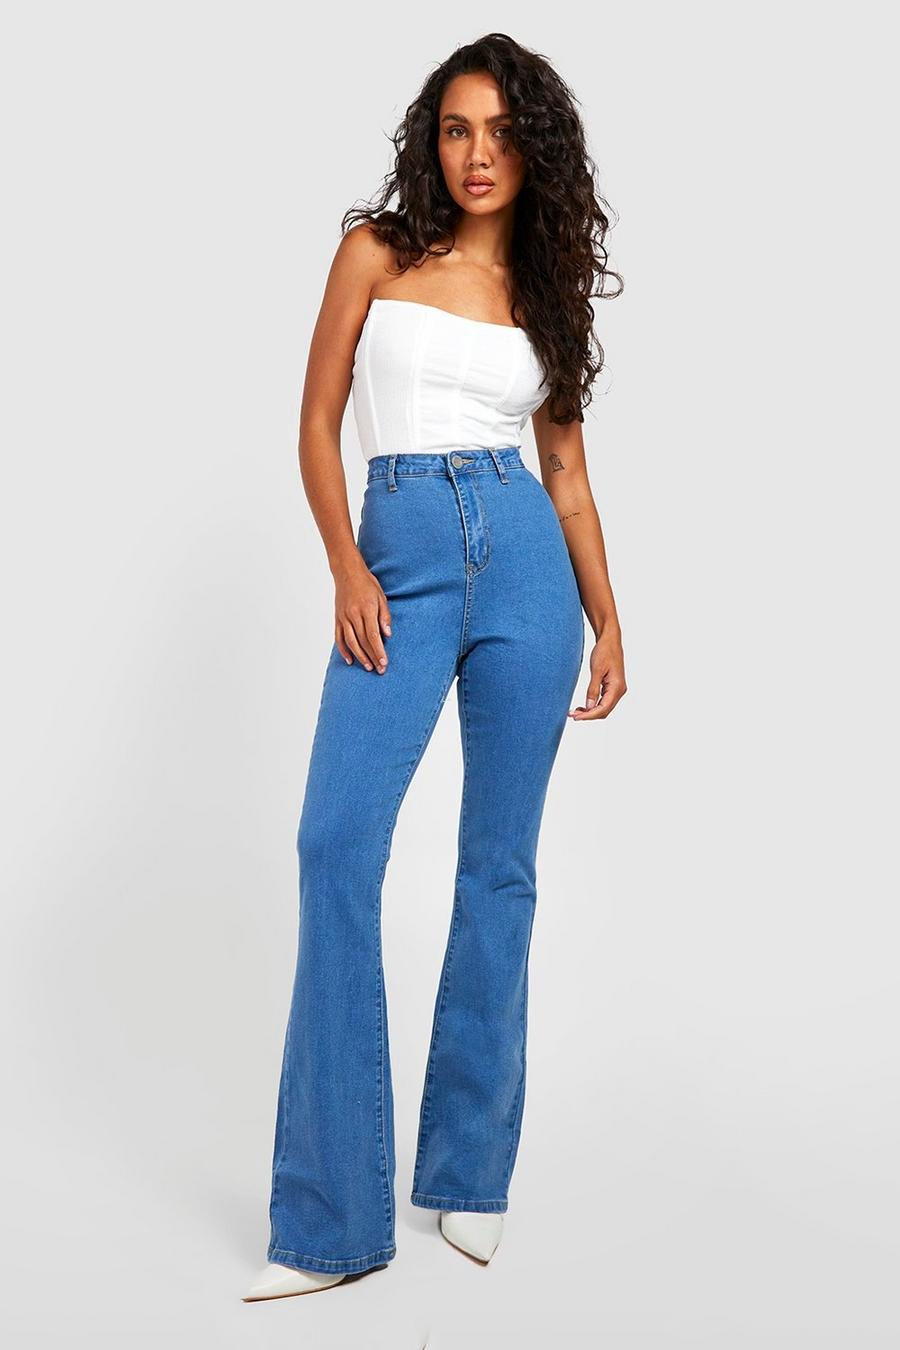 כחול ביניים azul ג'ינס בייסיק high waist מתרחב בסגנון דיסקו image number 1